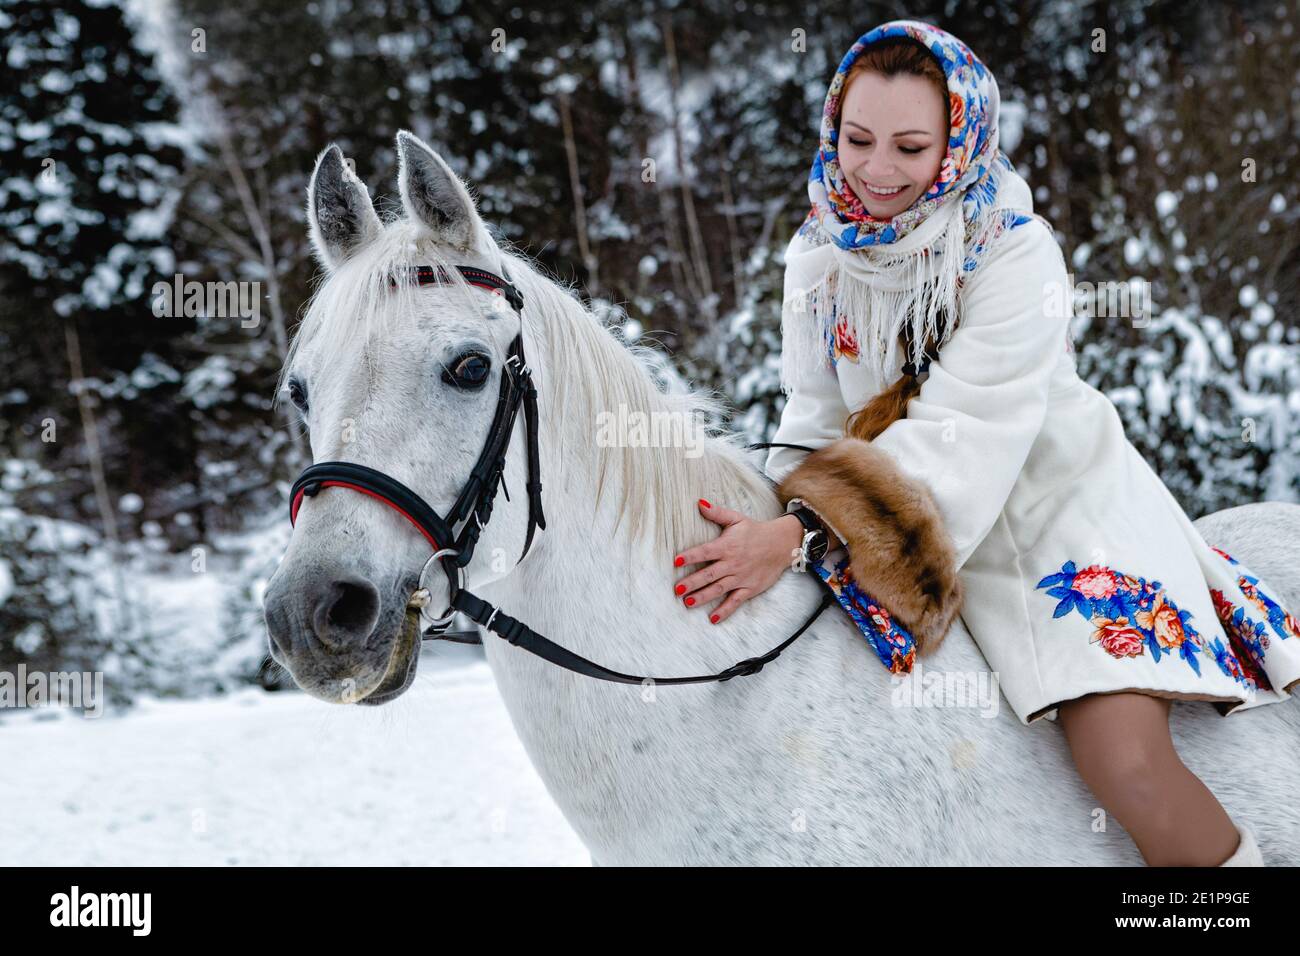 Jolie femme dans les vêtements traditionnels est de son cheval (concentrez-vous sur le visage du cheval) Banque D'Images